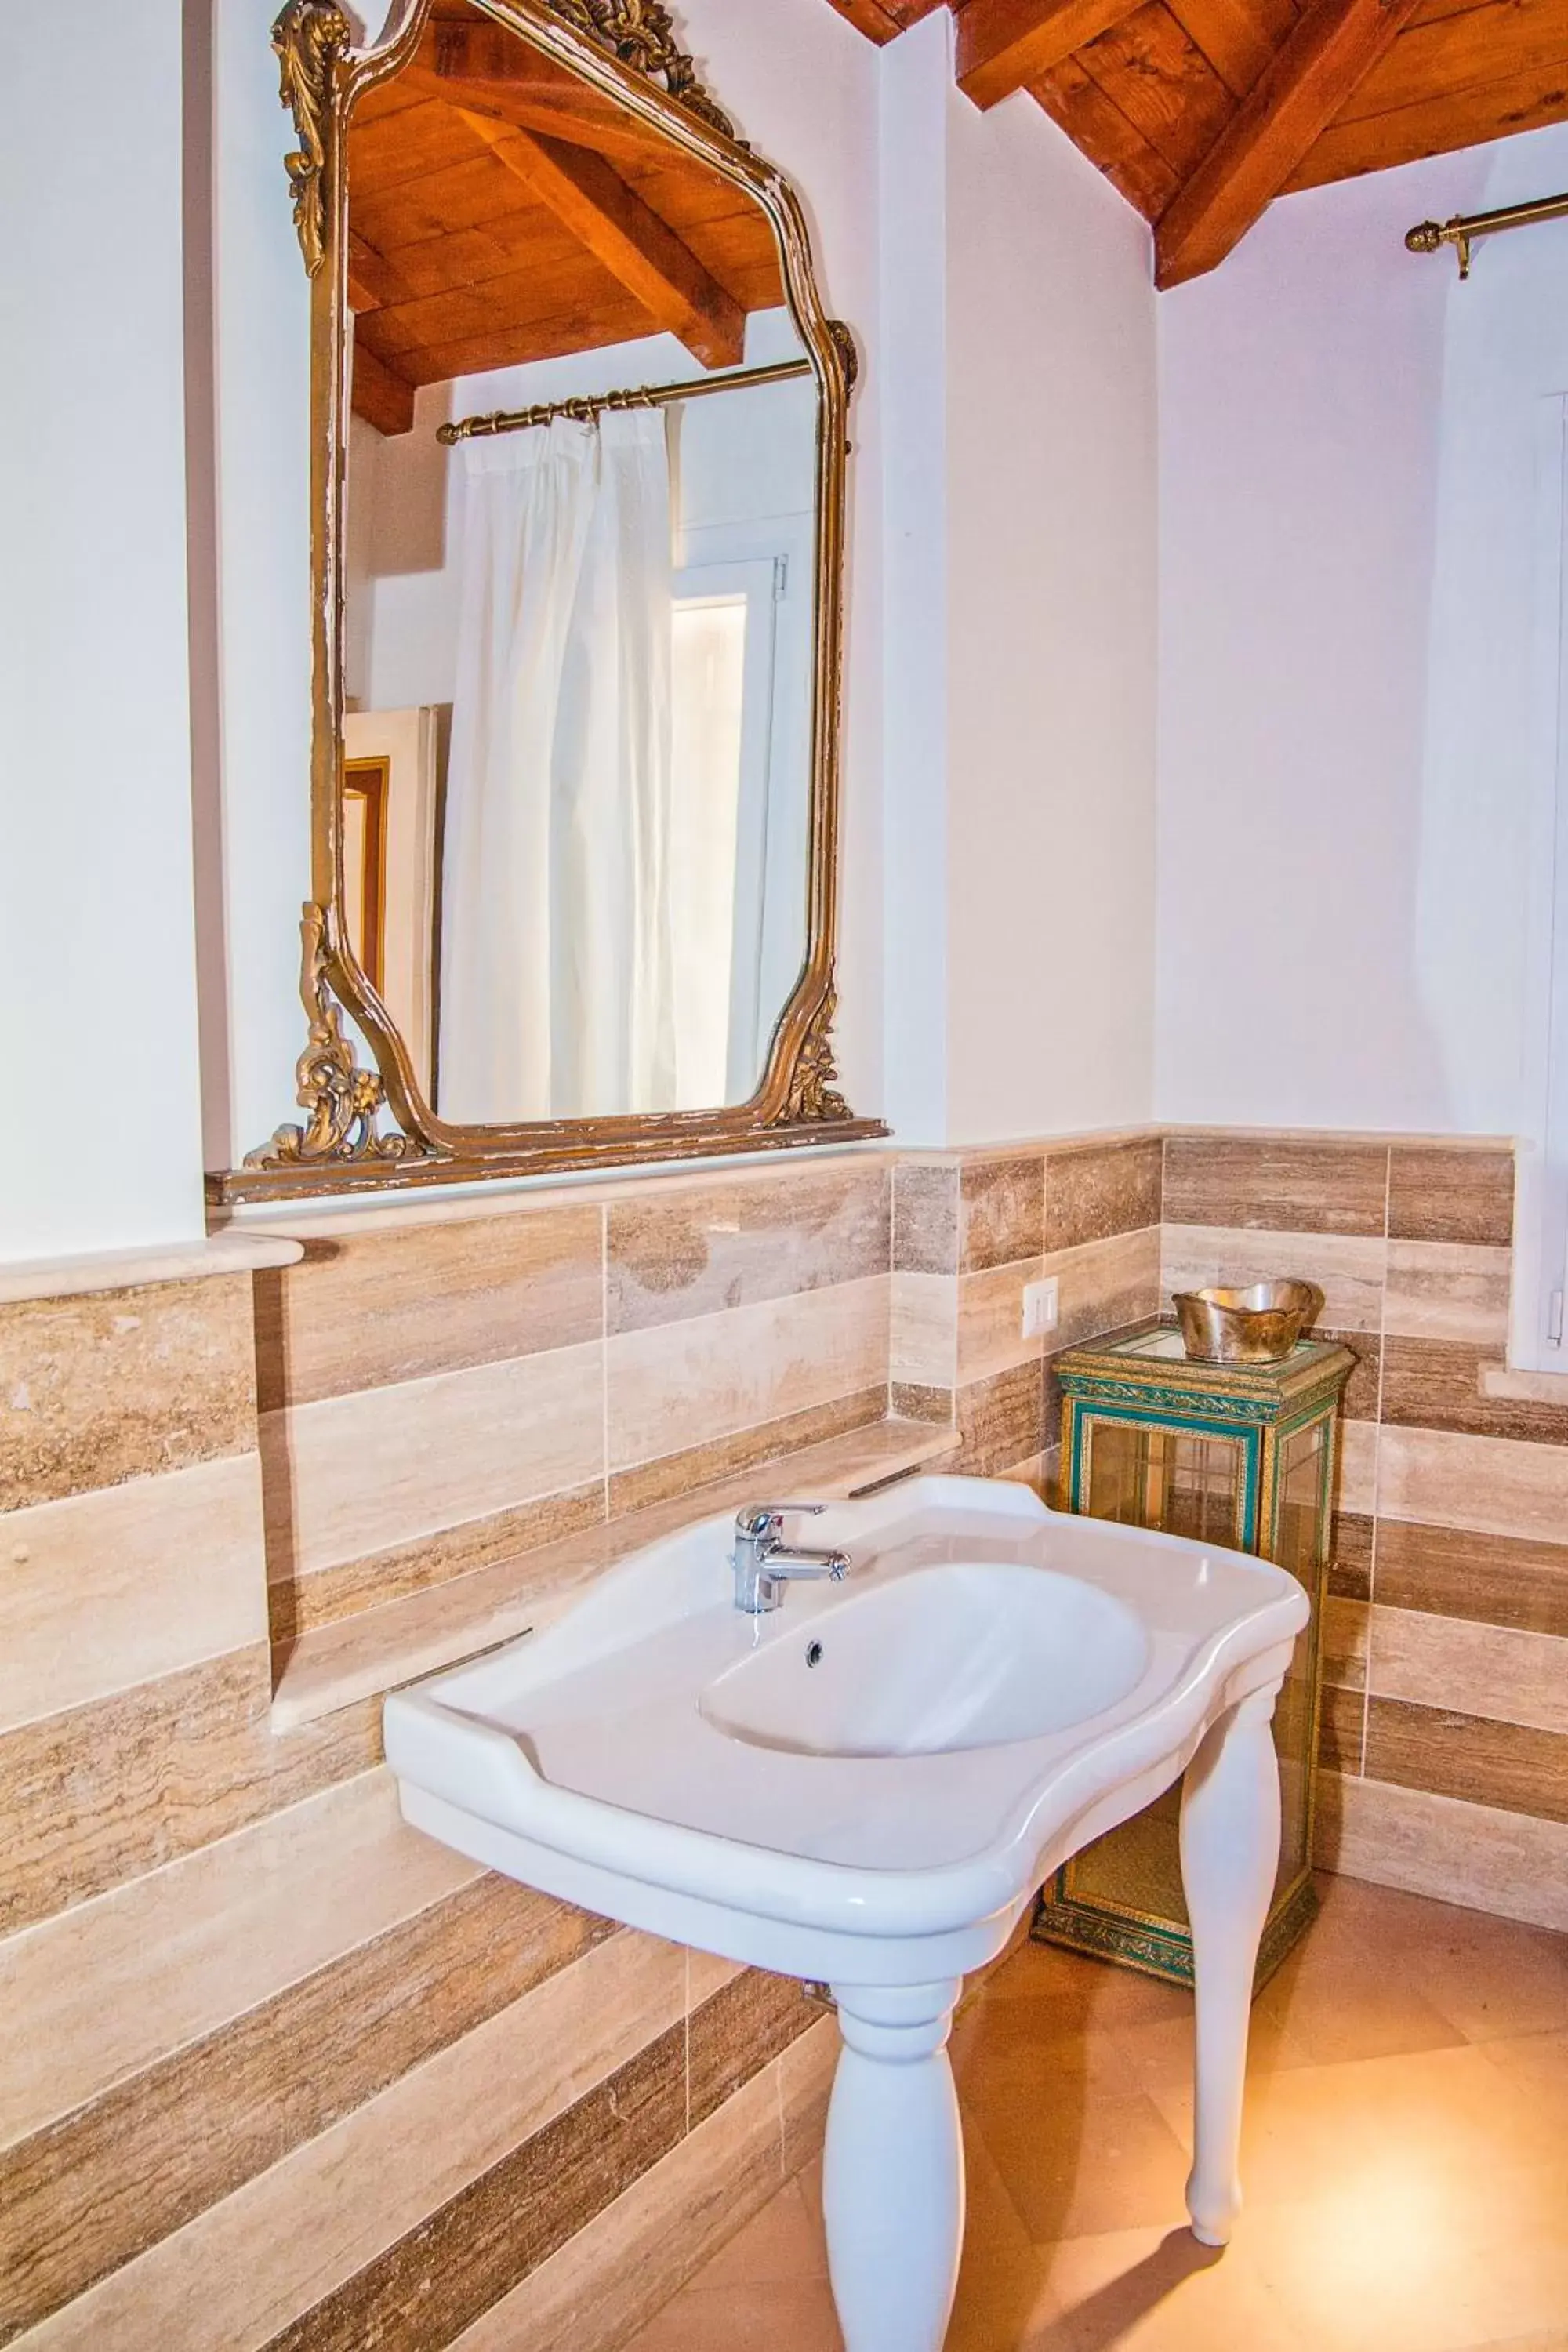 Bathroom in Villa Strampelli